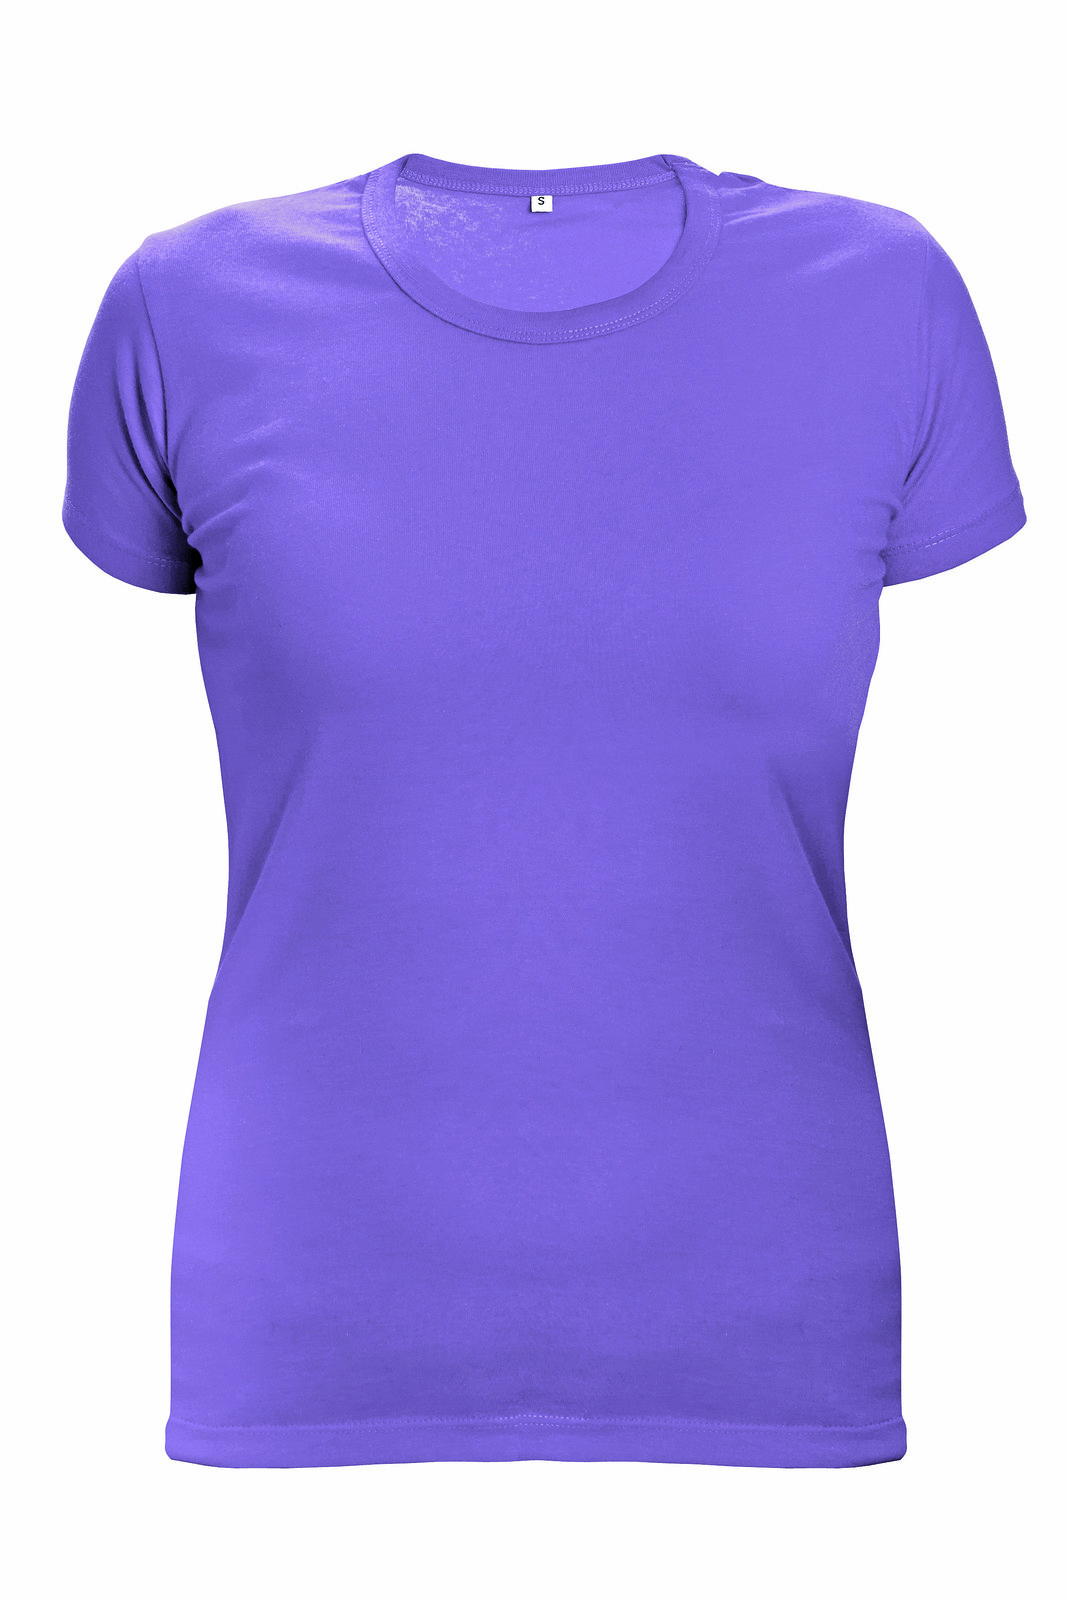 Dámske tričko s krátkym rukávom Surma Lady - veľkosť: S, farba: fialová